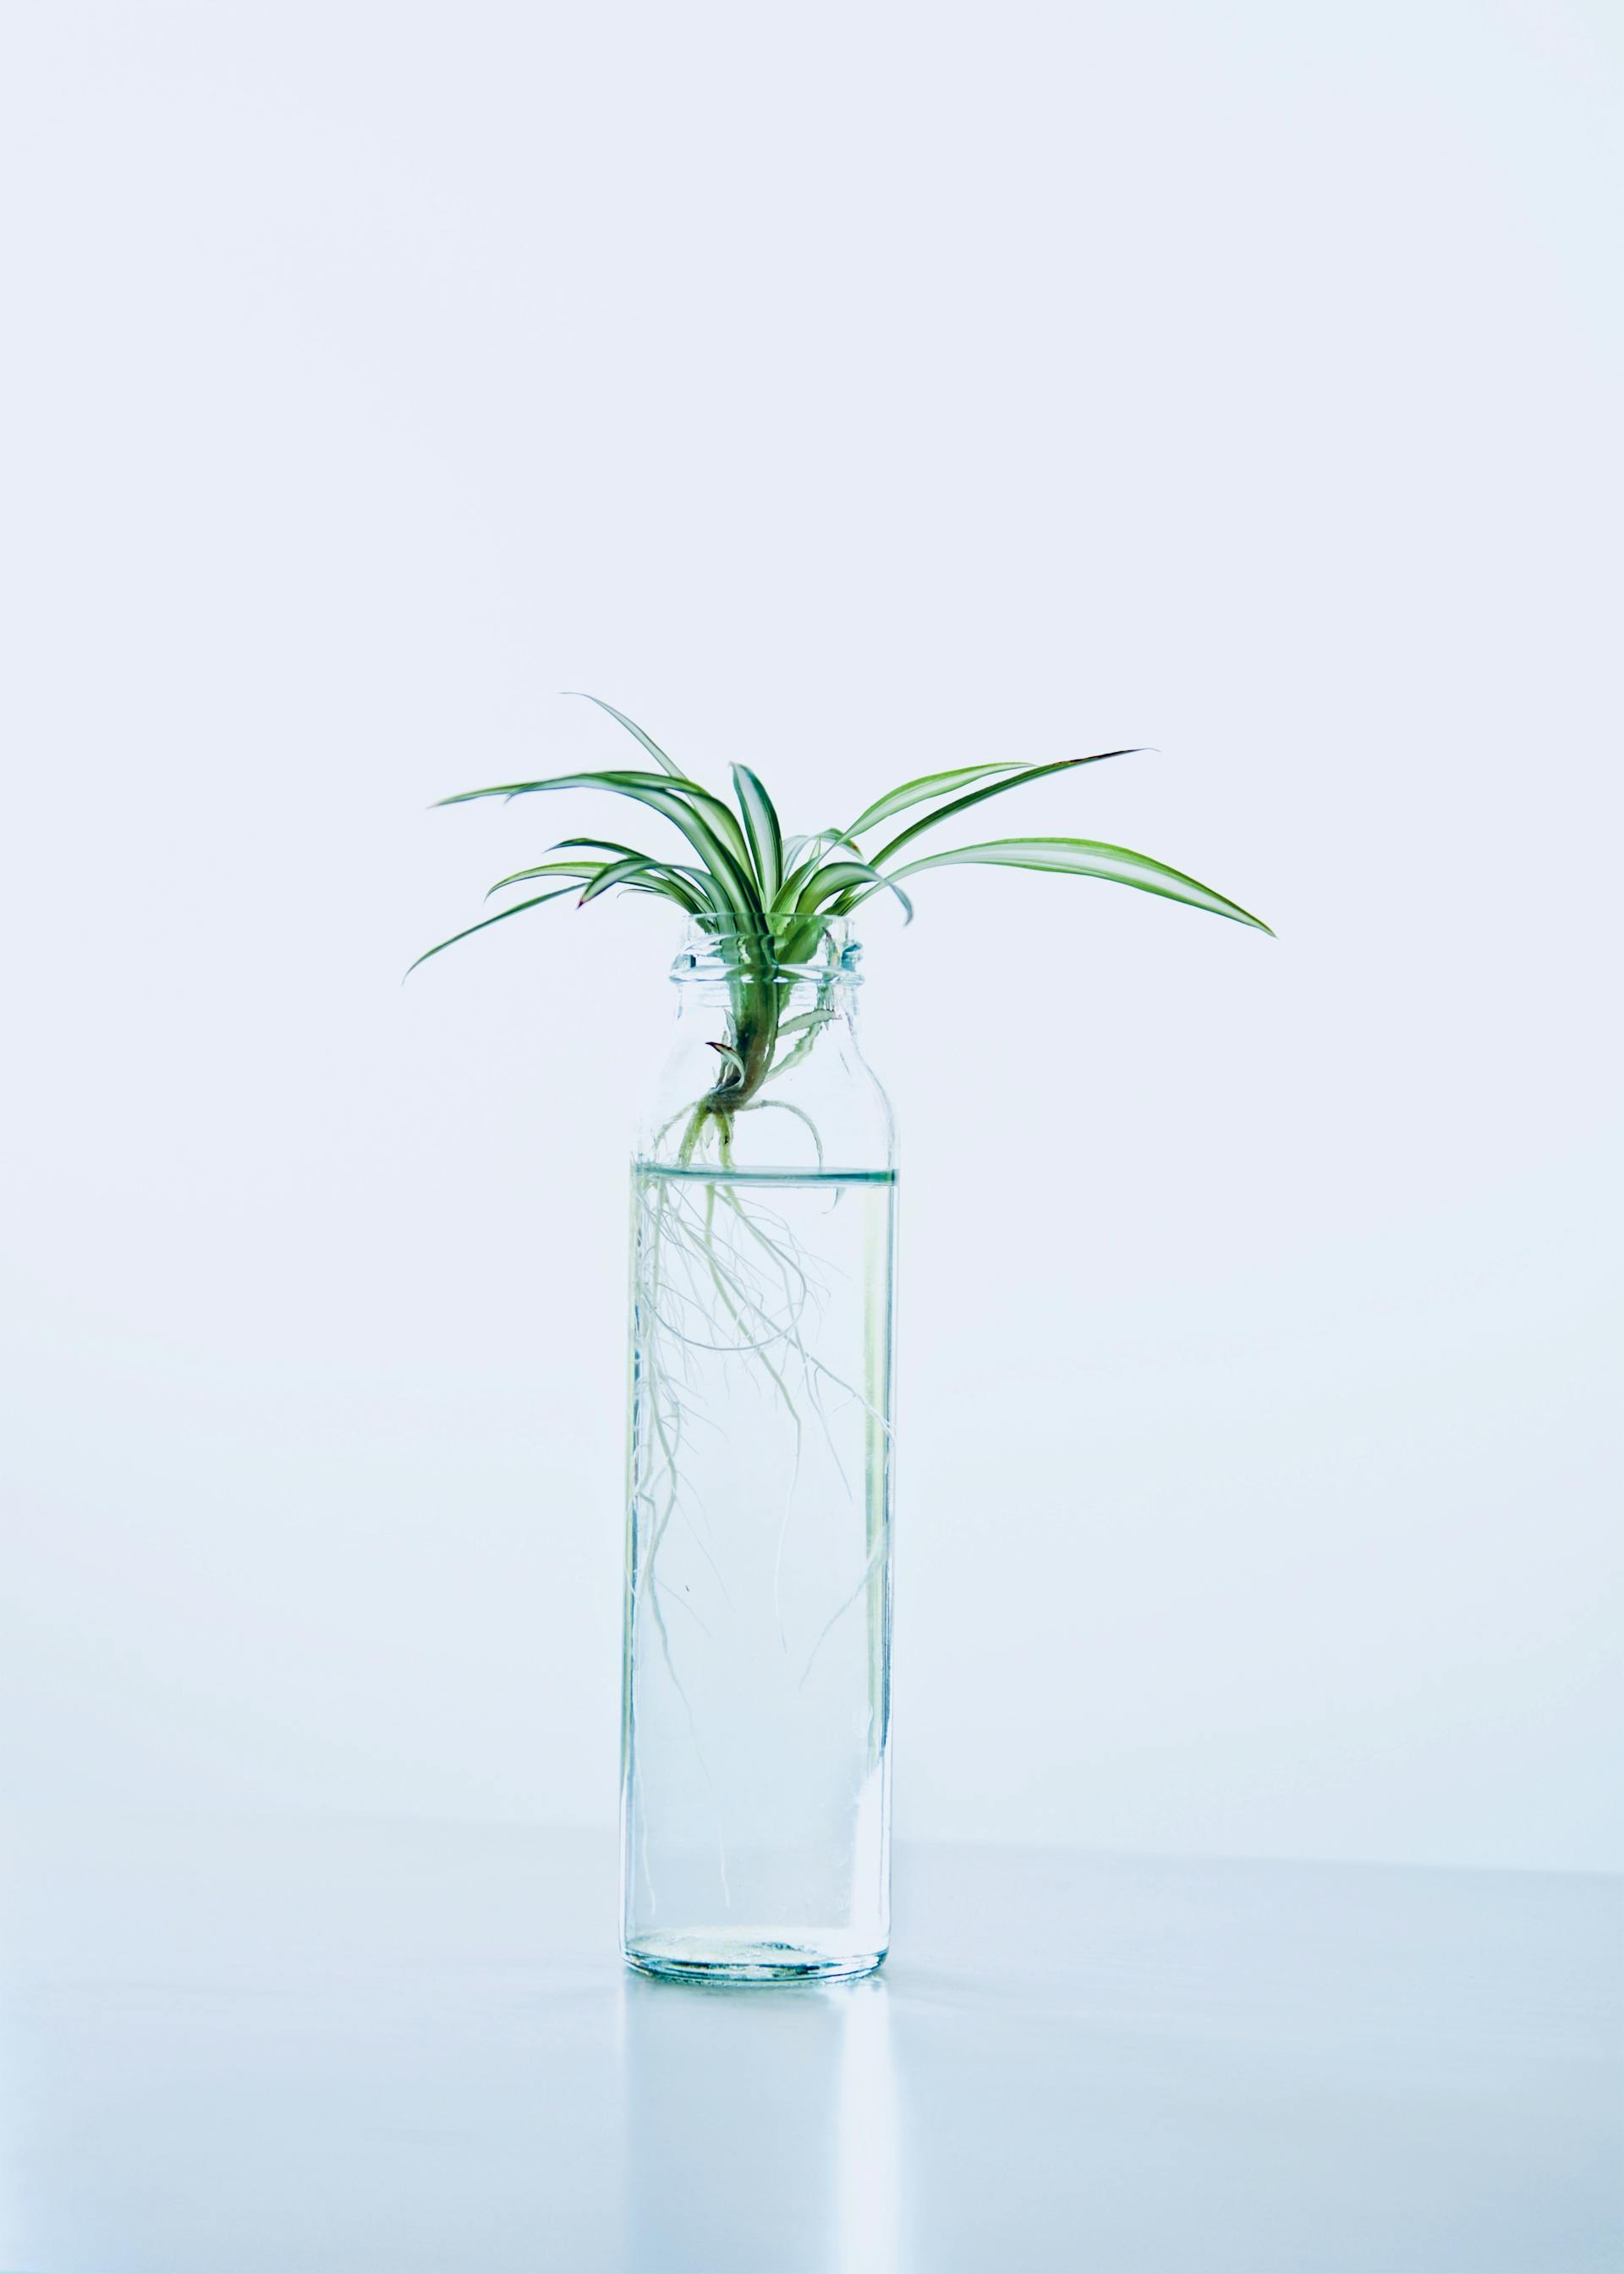 Une plante verte dans une bouteille en verre avec de l'eau | Source : Pexels